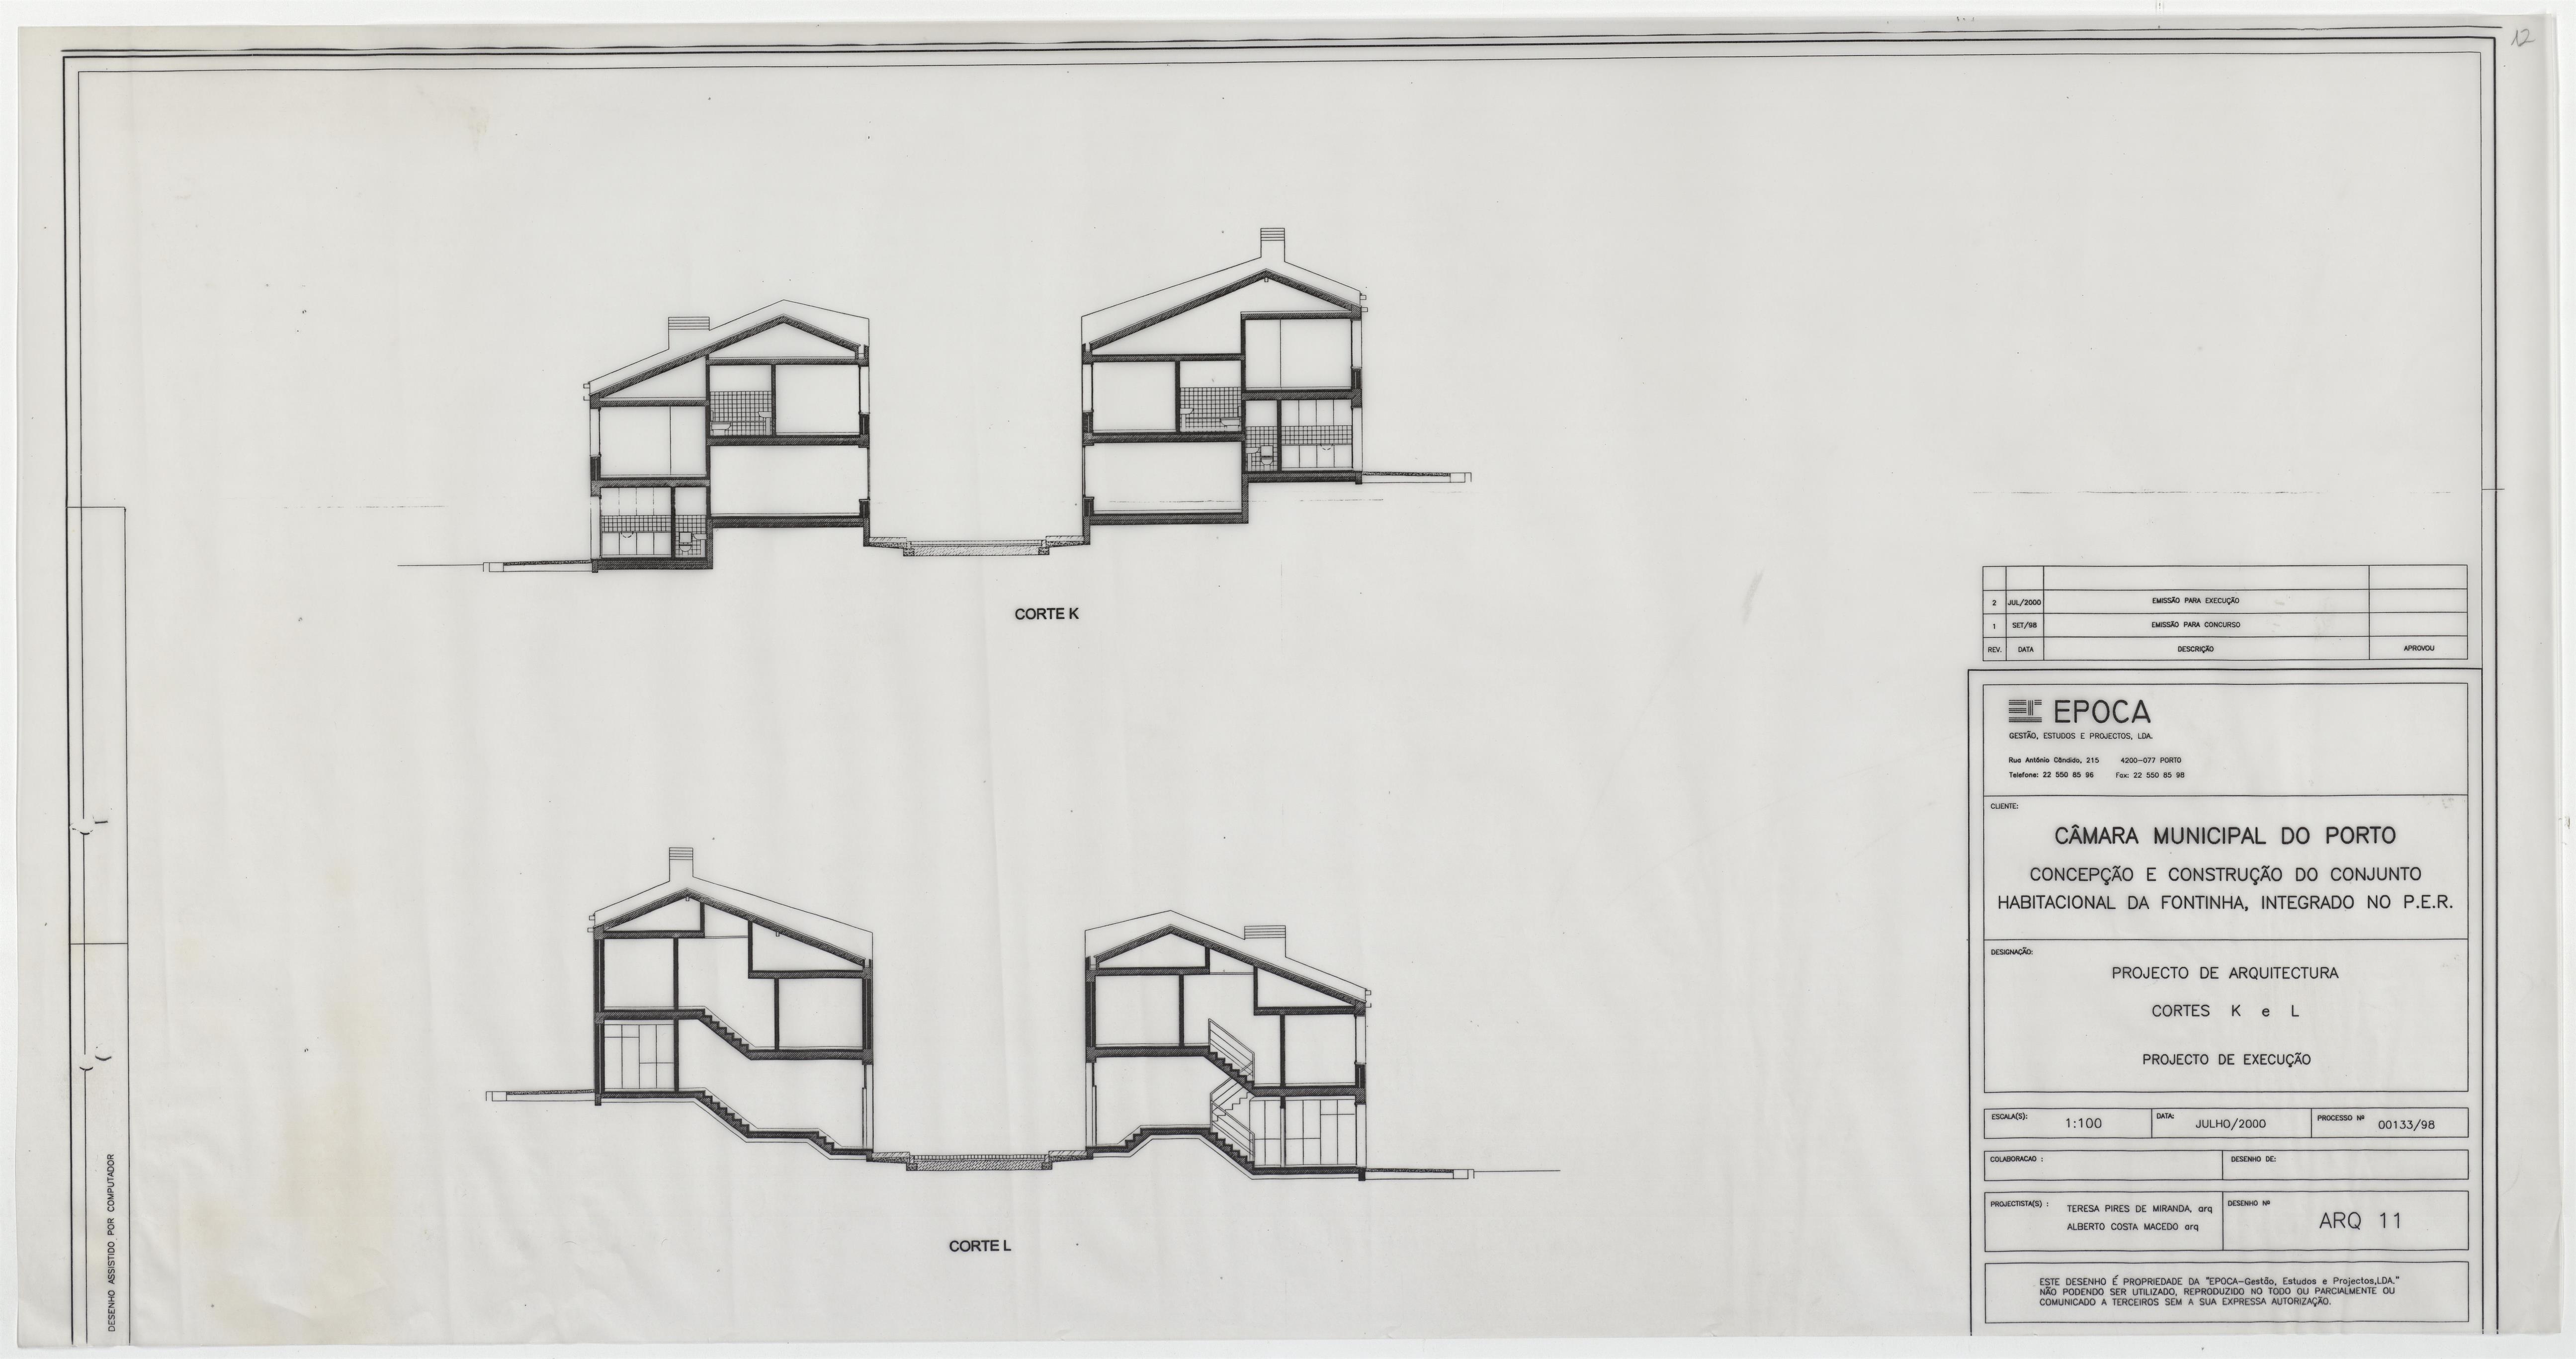 Conjunto habitacional da Fontinha integrado no PER : arquitetura : alçados/cortes